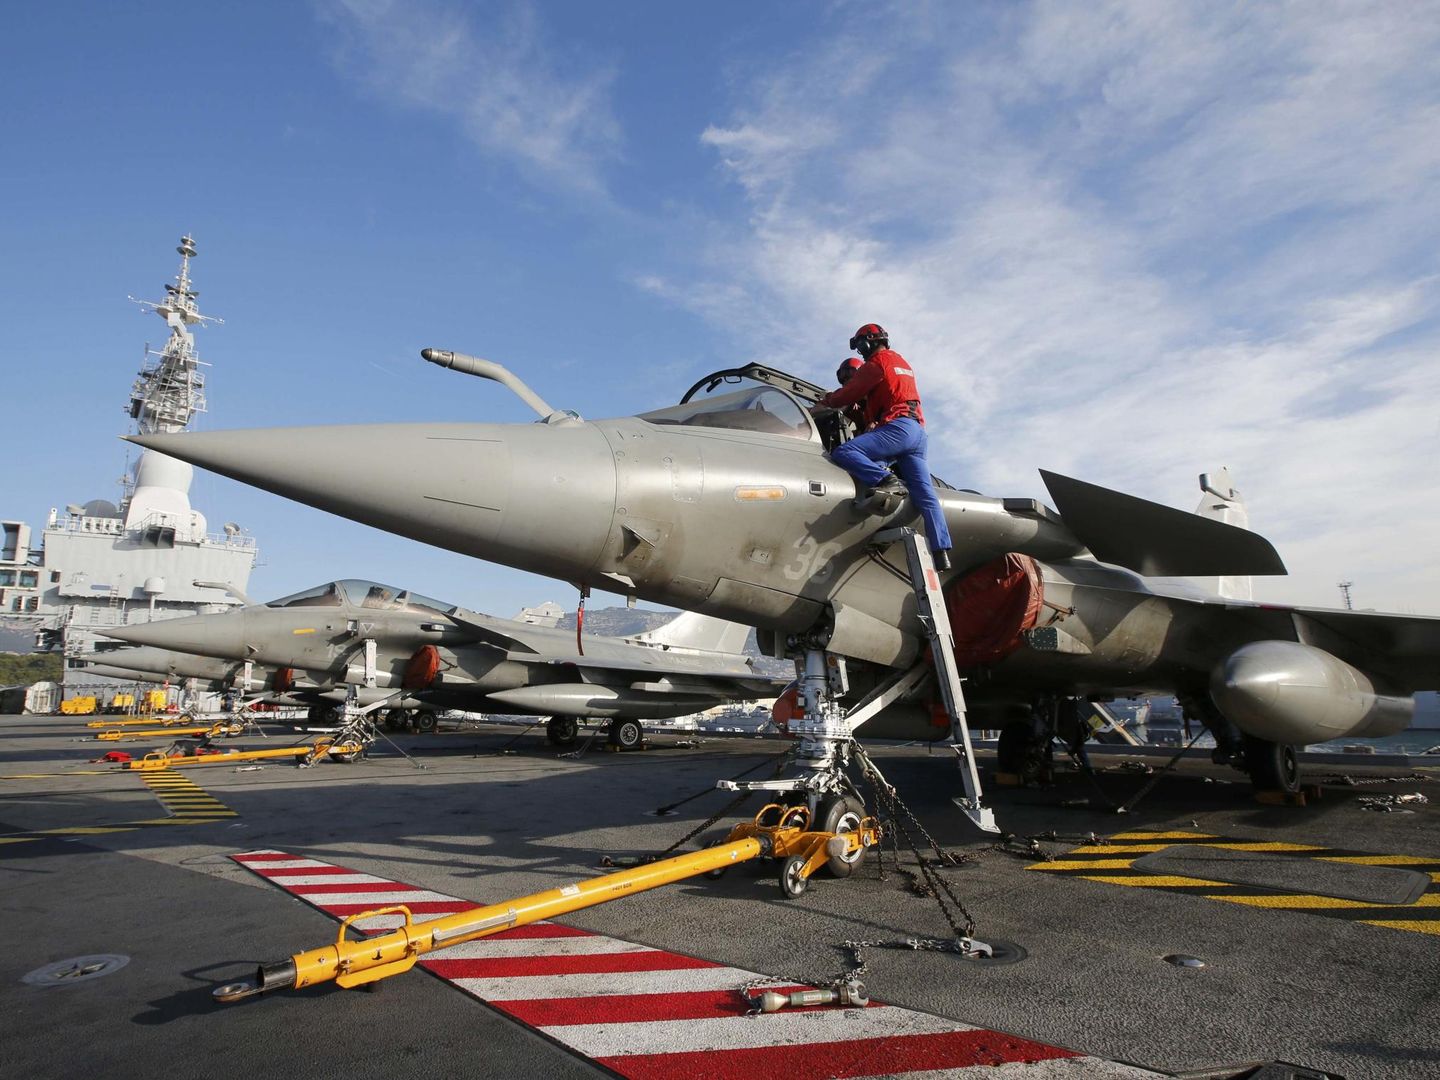 Un caza de combate a bordo del portaaviones Charles de Gaulle, que participa en la operación internacional contra el ISIS en Irak y Siria. (Reuters)